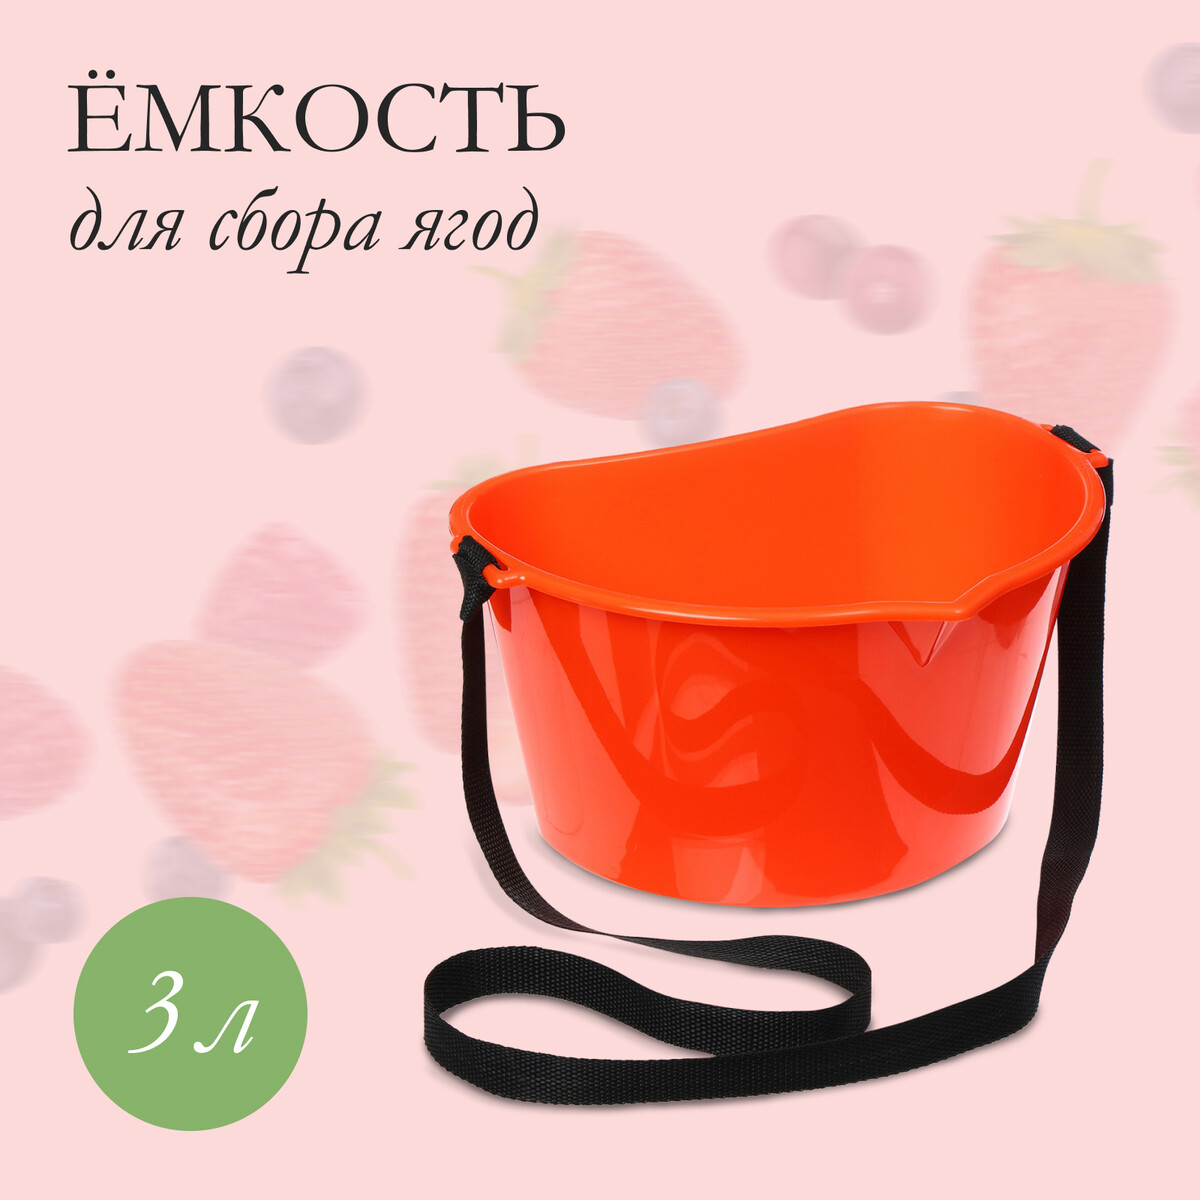 Ёмкость для сбора ягод, 3 л, оранжевая блюда из ягод якутии